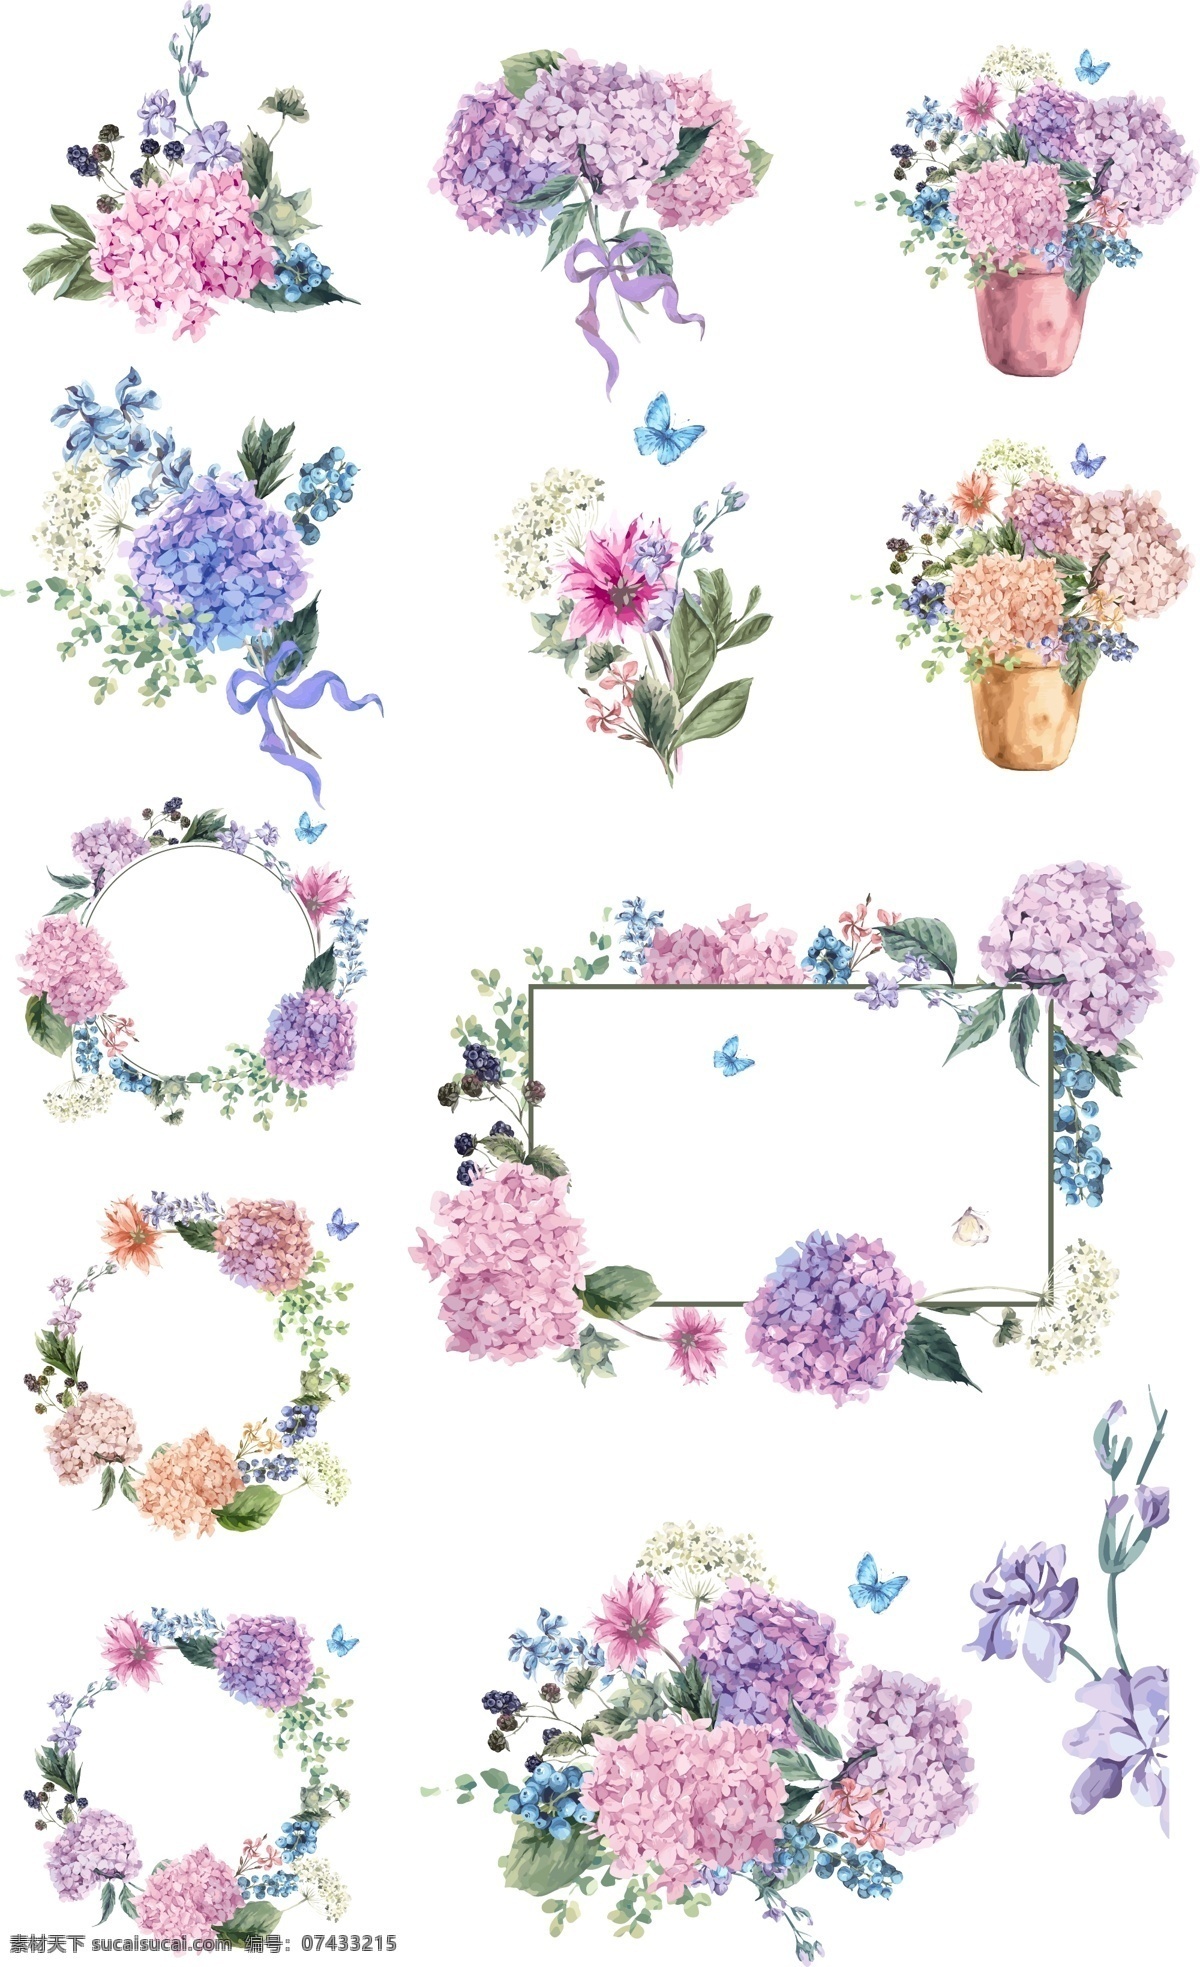 粉 紫色 边框 花朵 矢量 手绘 卡通 矢量素材 设计素材 平面素材